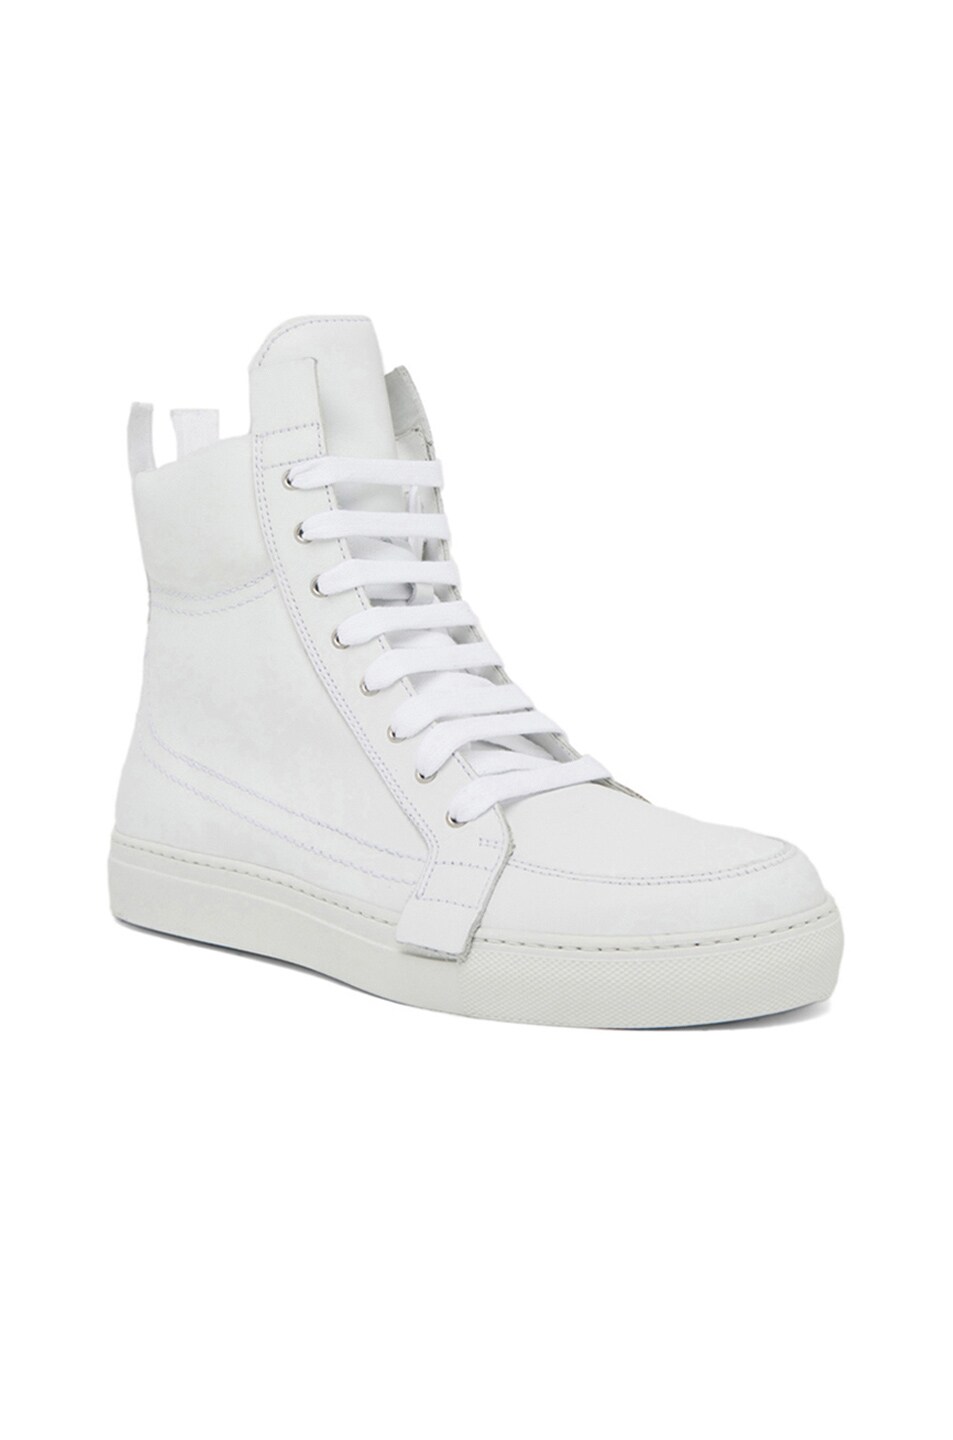 Kris Van Assche Zip Calfskin Leather Sneakers in White | FWRD